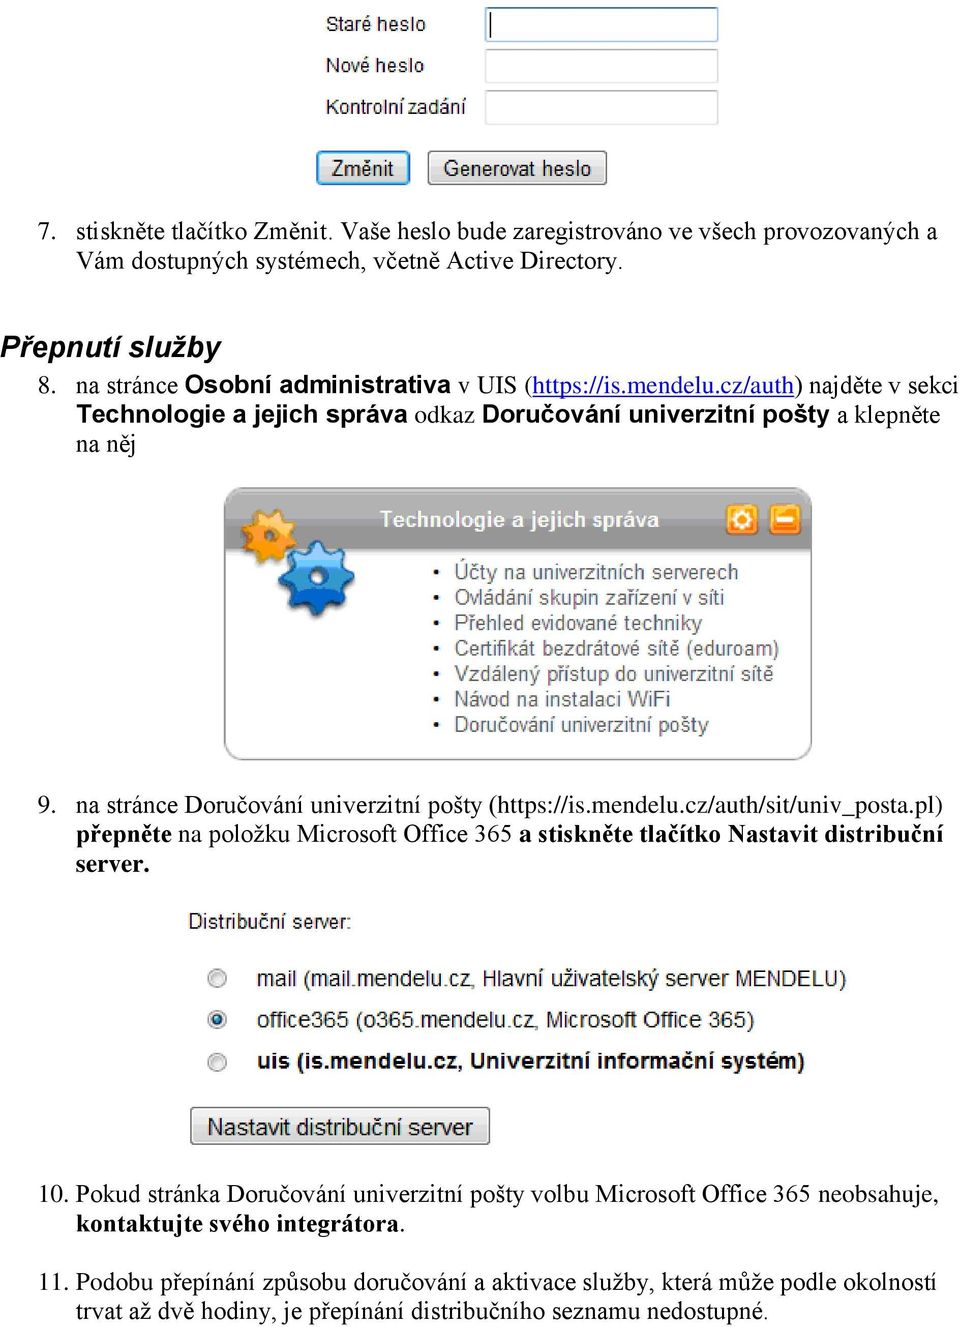 na stránce Doručování univerzitní pošty (https://is.mendelu.cz/auth/sit/univ_posta.pl) přepněte na položku Microsoft Office 365 a stiskněte tlačítko Nastavit distribuční server. 10.